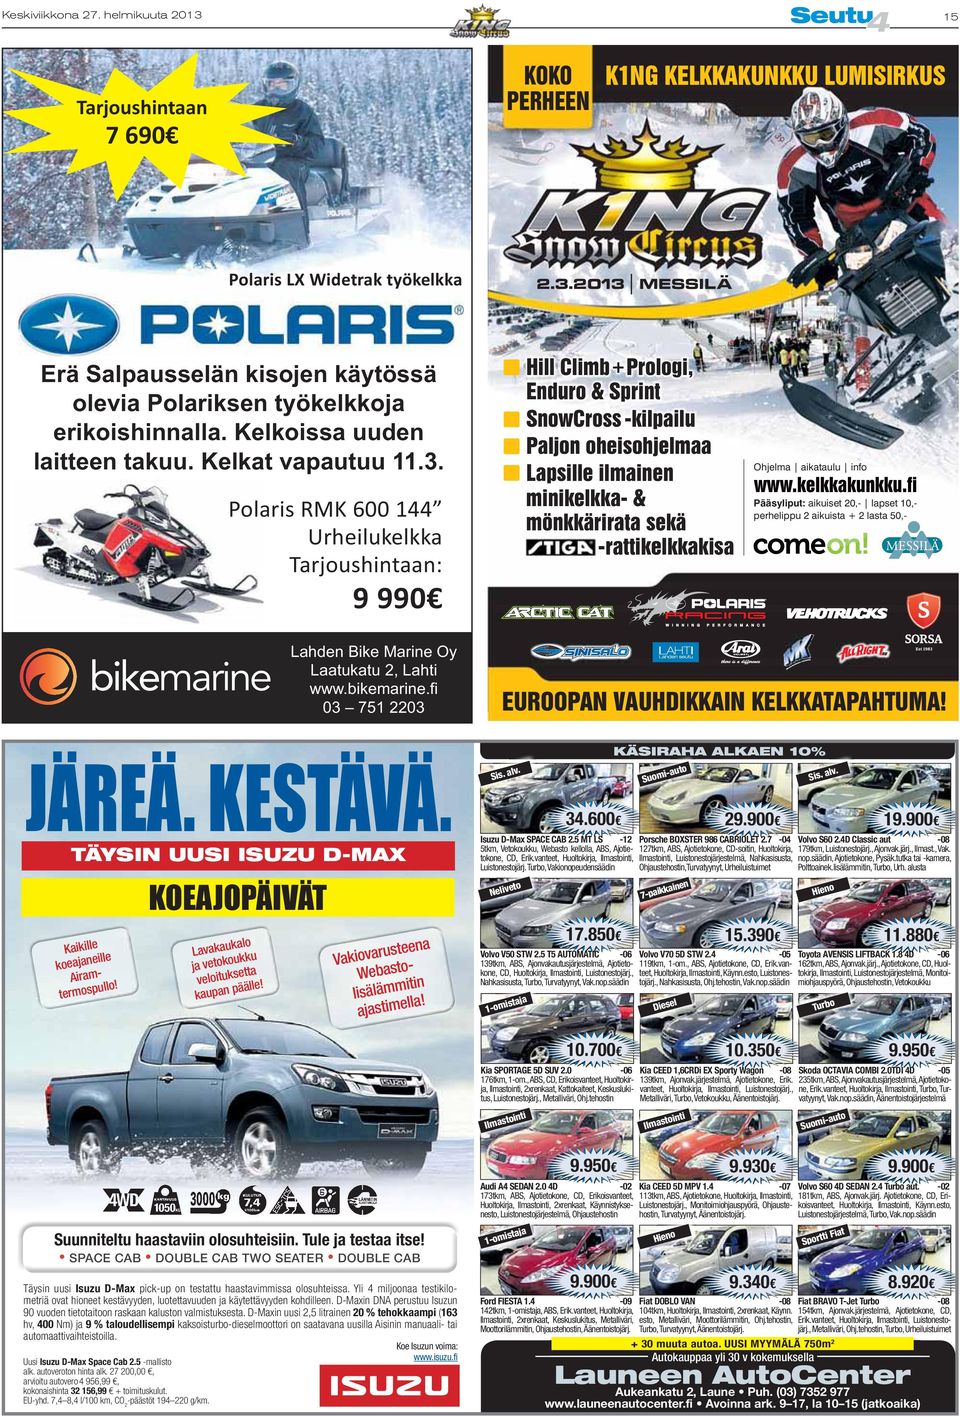 Polaris RMK 600 144 Urheilukelkka Tarjoushintaan: 9 990 Hill Climb + Prologi, Enduro & Sprint SnowCross -kilpailu Paljon oheisohjelmaa Lapsille ilmainen minikelkka- & mönkkärirata sekä